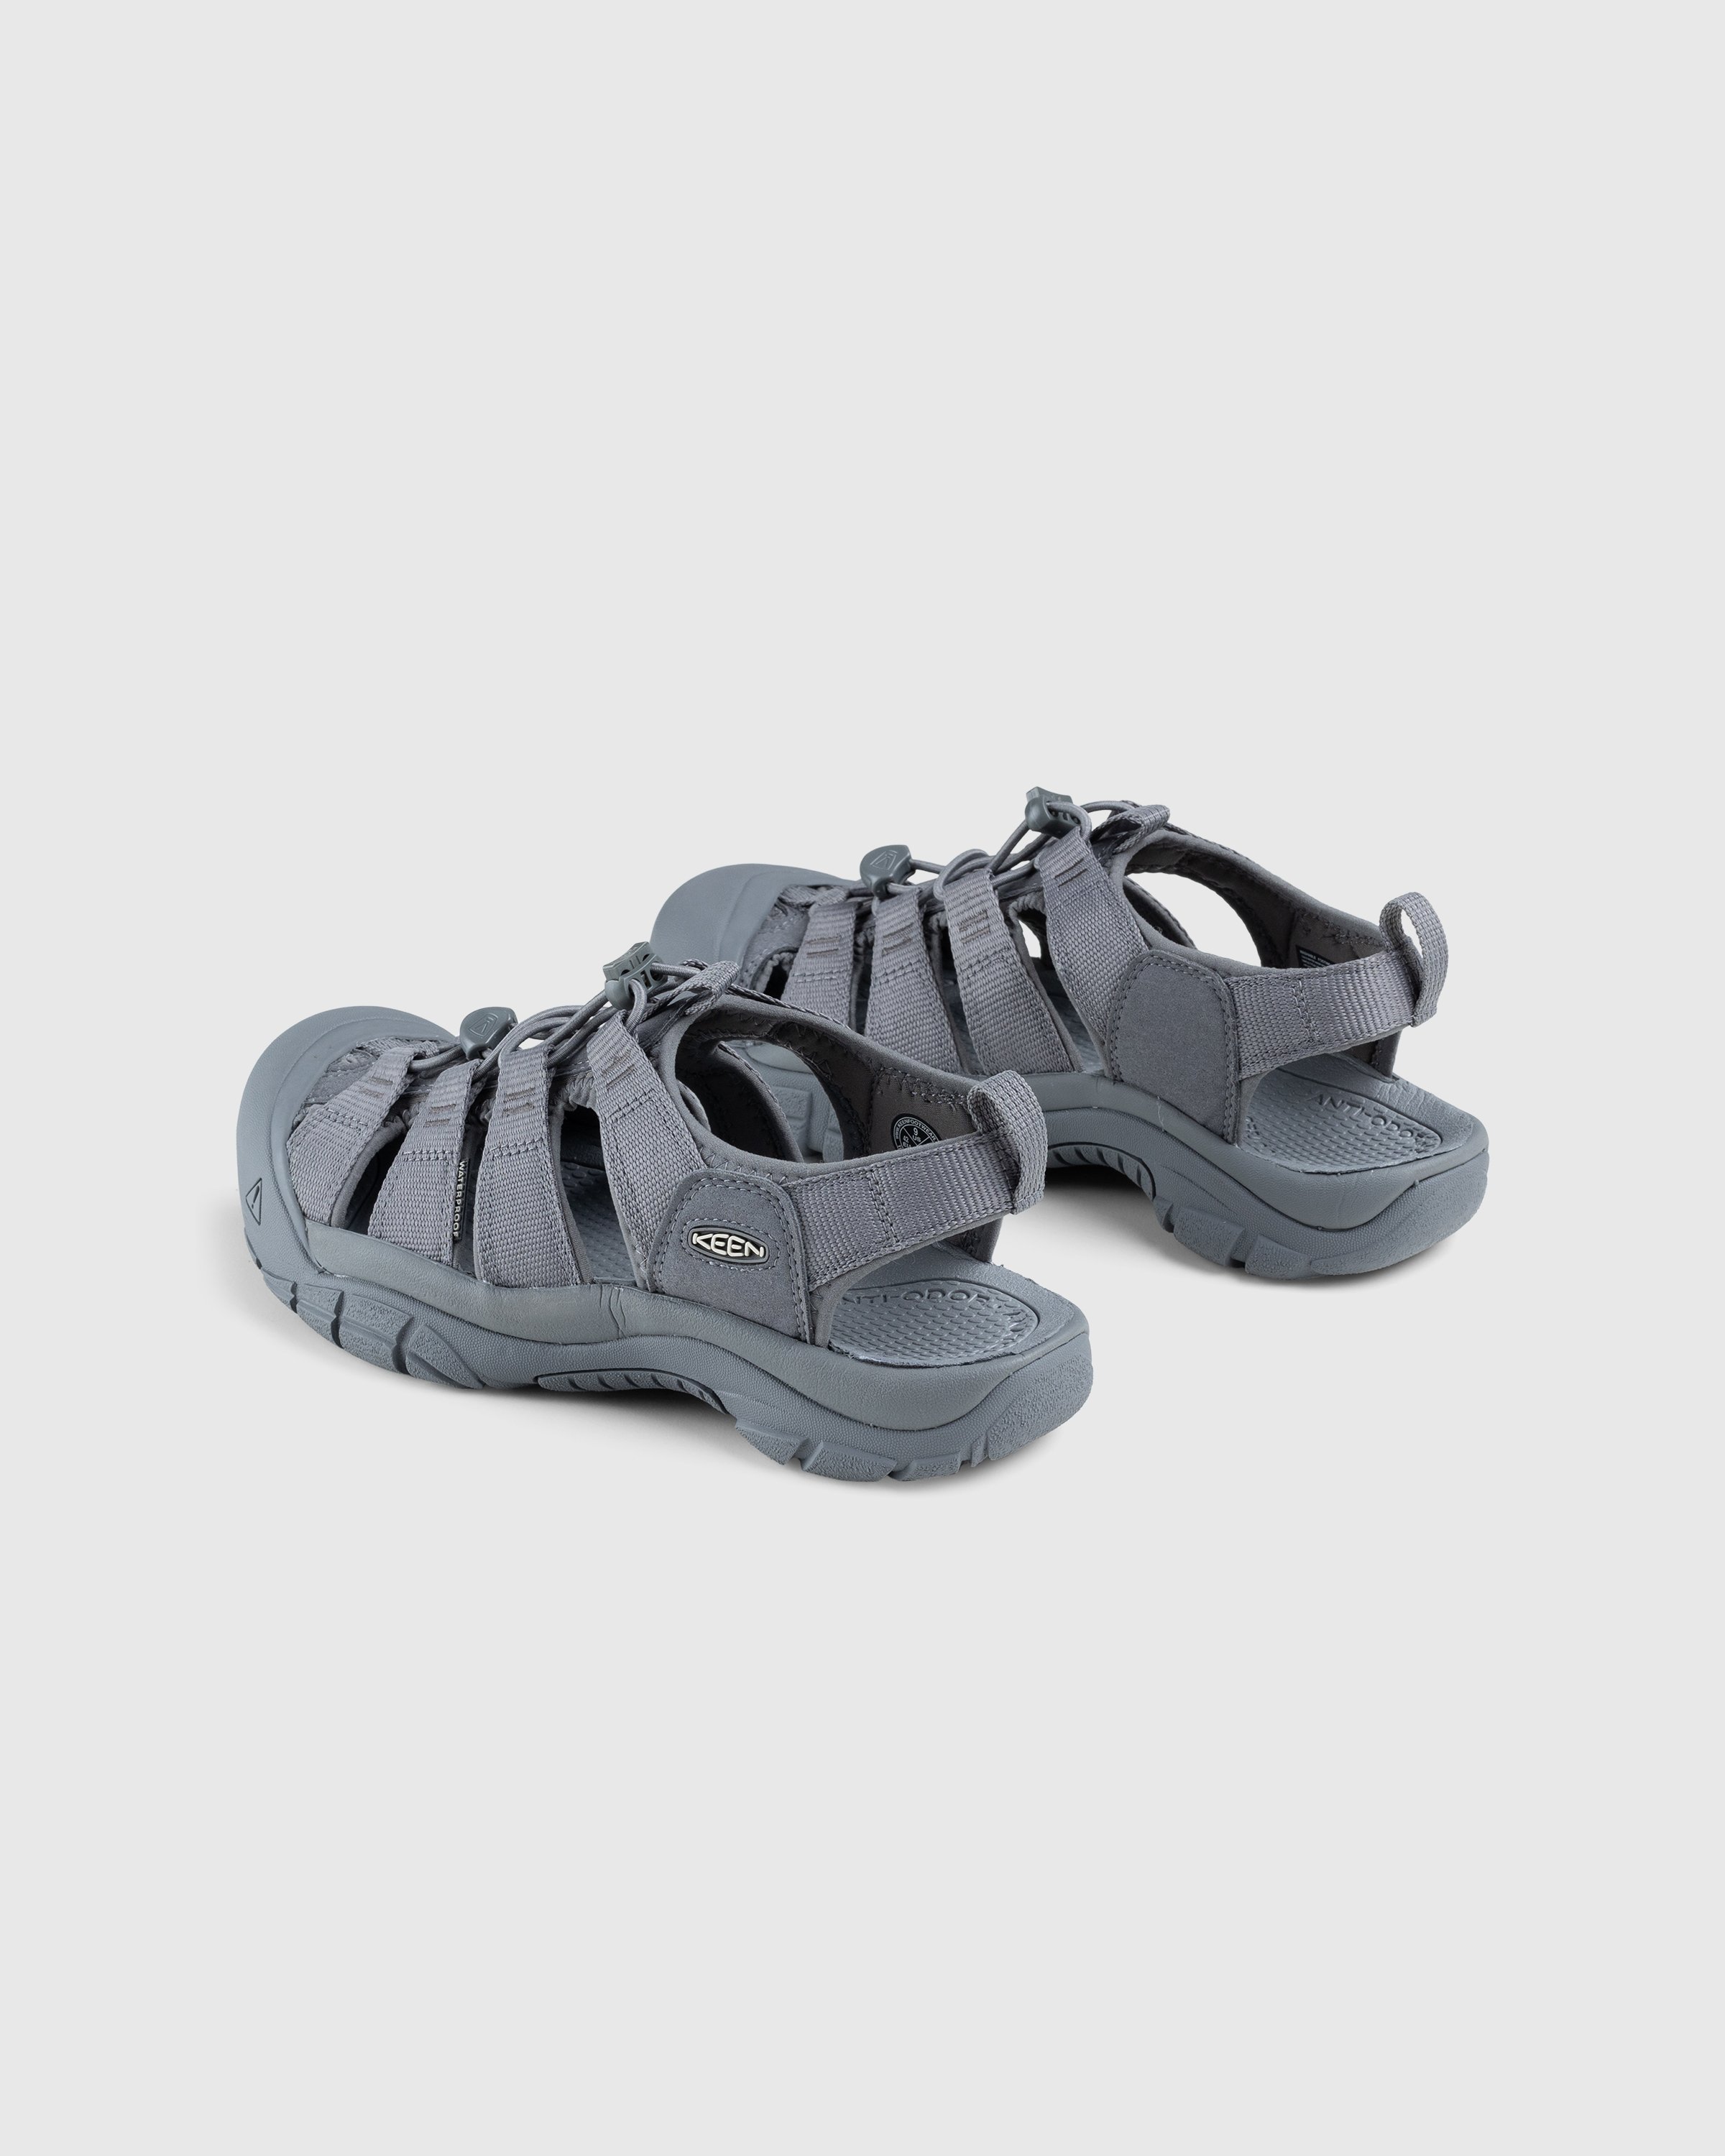 Keen - Newport H2 Monochrome/Steel Grey - Footwear - Grey - Image 4